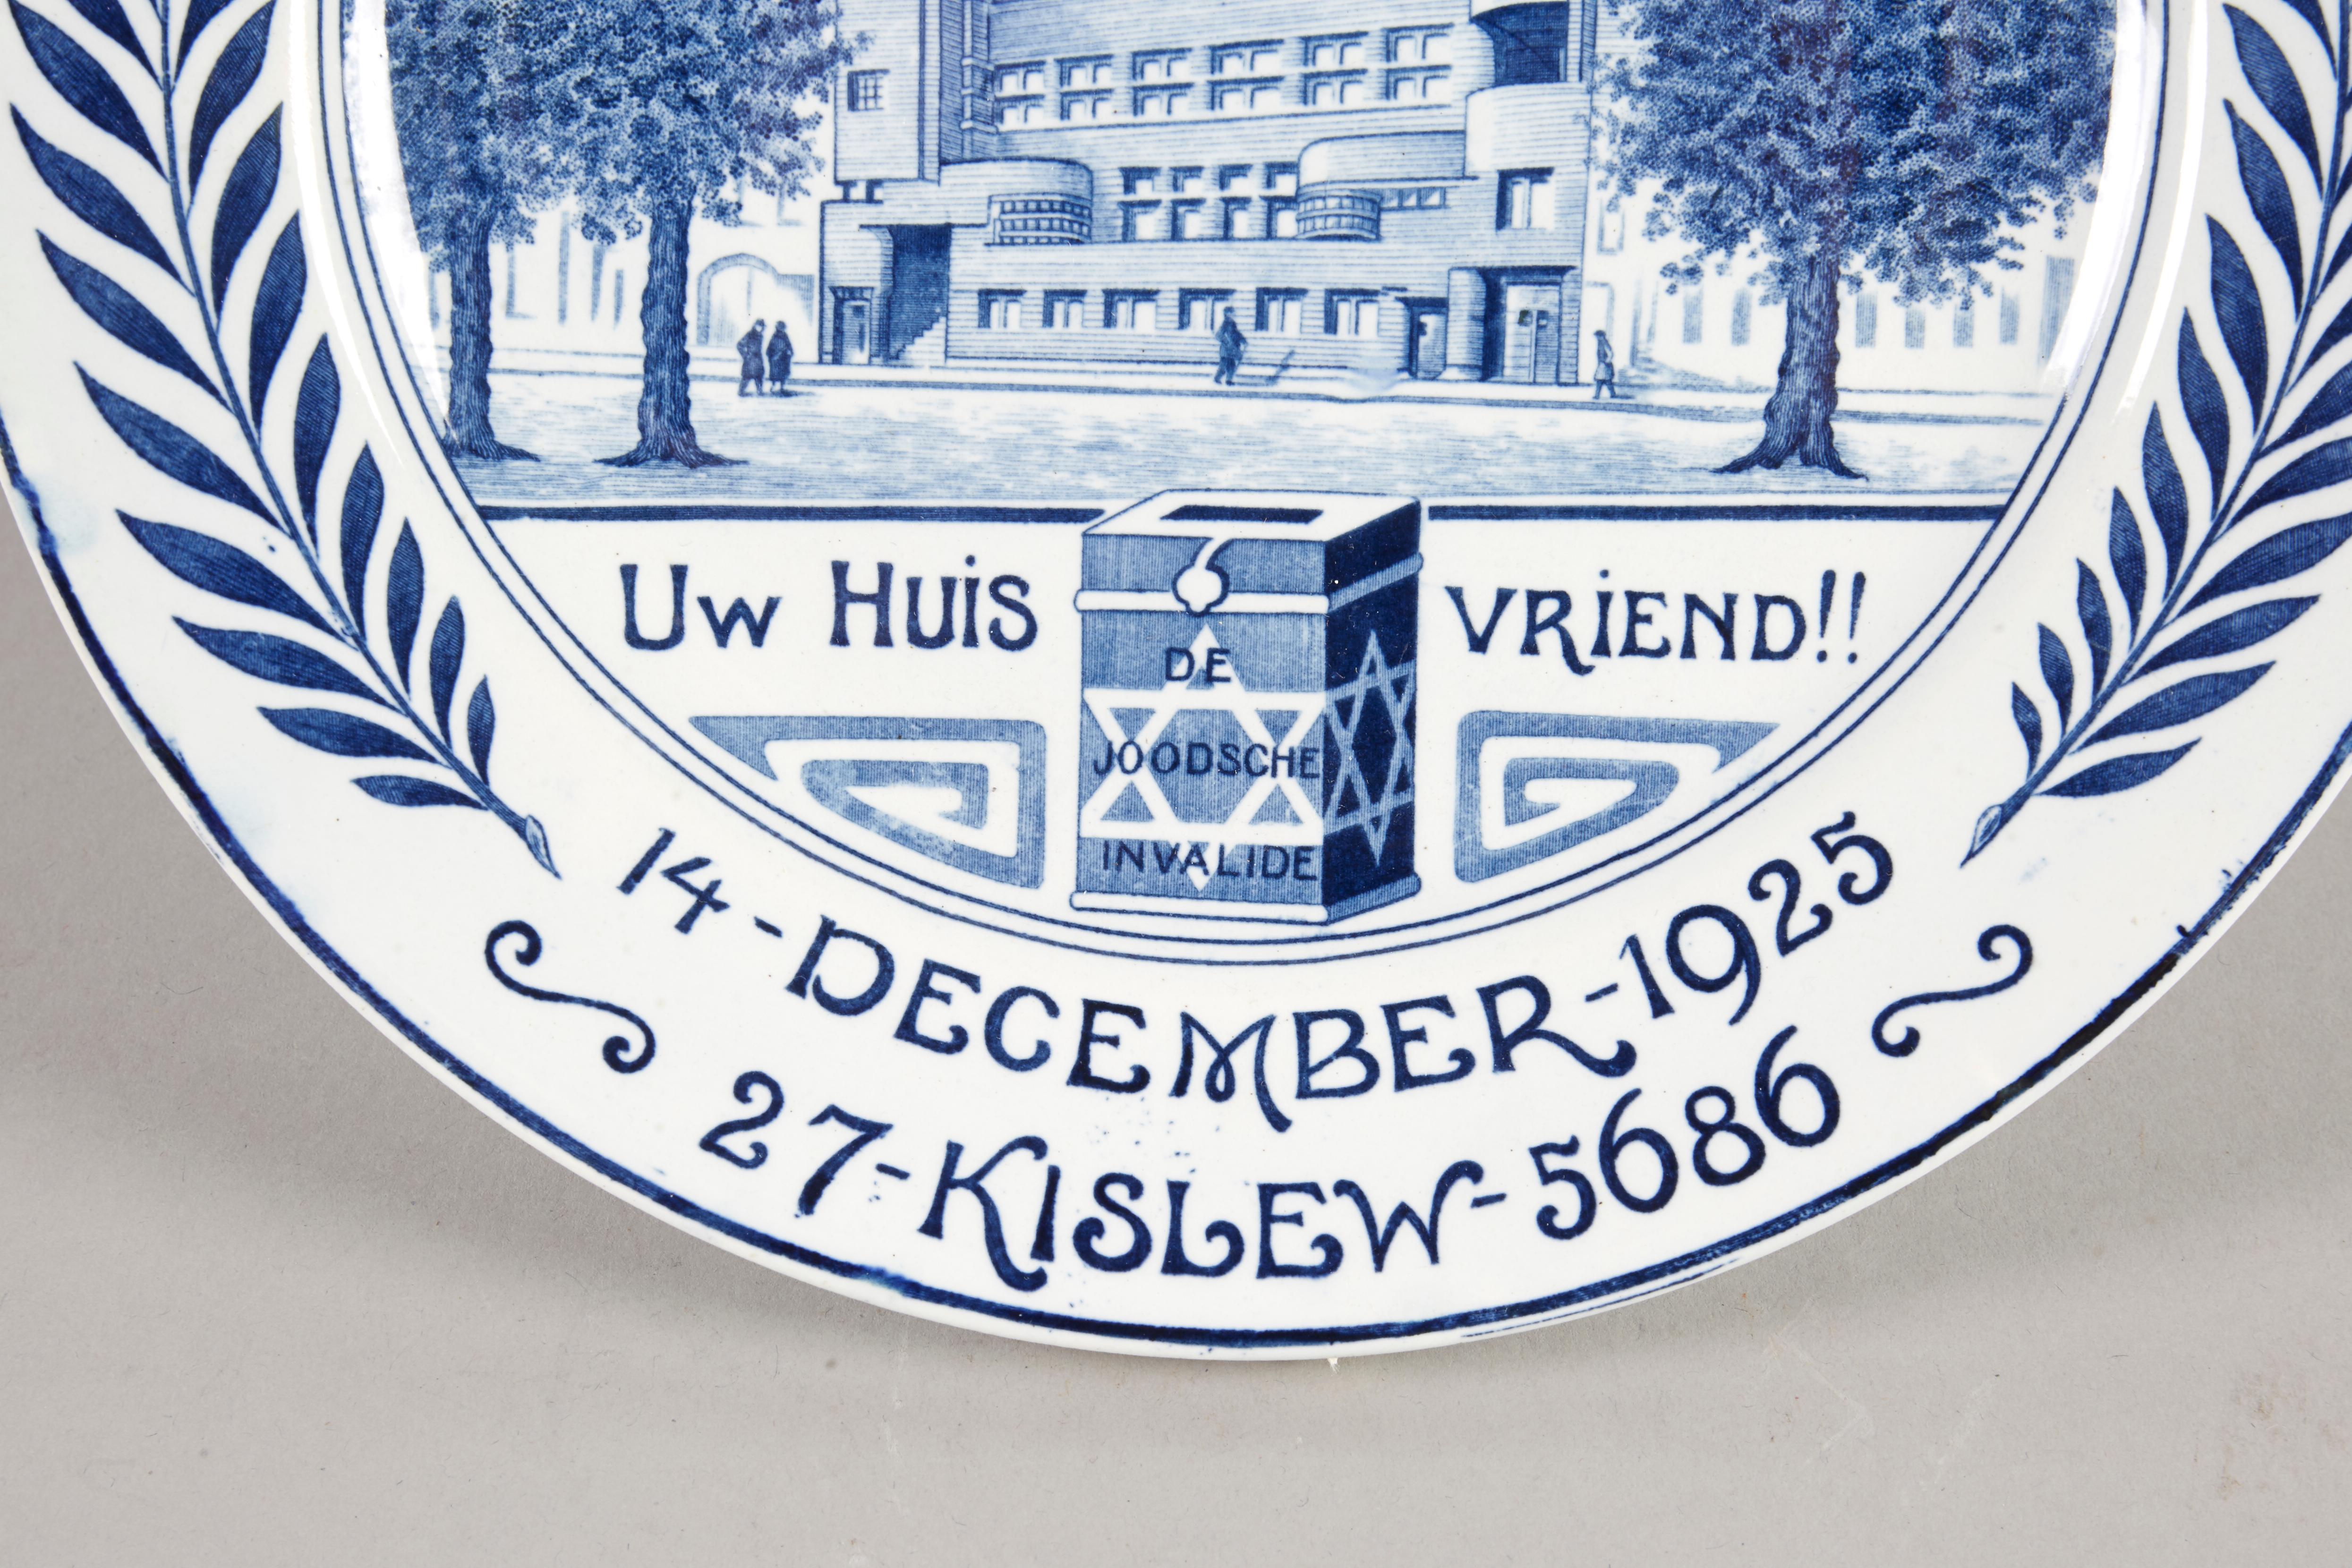 Assiette commémorative en céramique, Pays-Bas, Amsterdam, 1925
Assiette en céramique bleue et blanche réalisée en l'honneur d'un nouveau bâtiment pour l'hôpital juif du fonds de charité judéo-néerlandais établi à Amsterdam en 1911 (De Joodsche